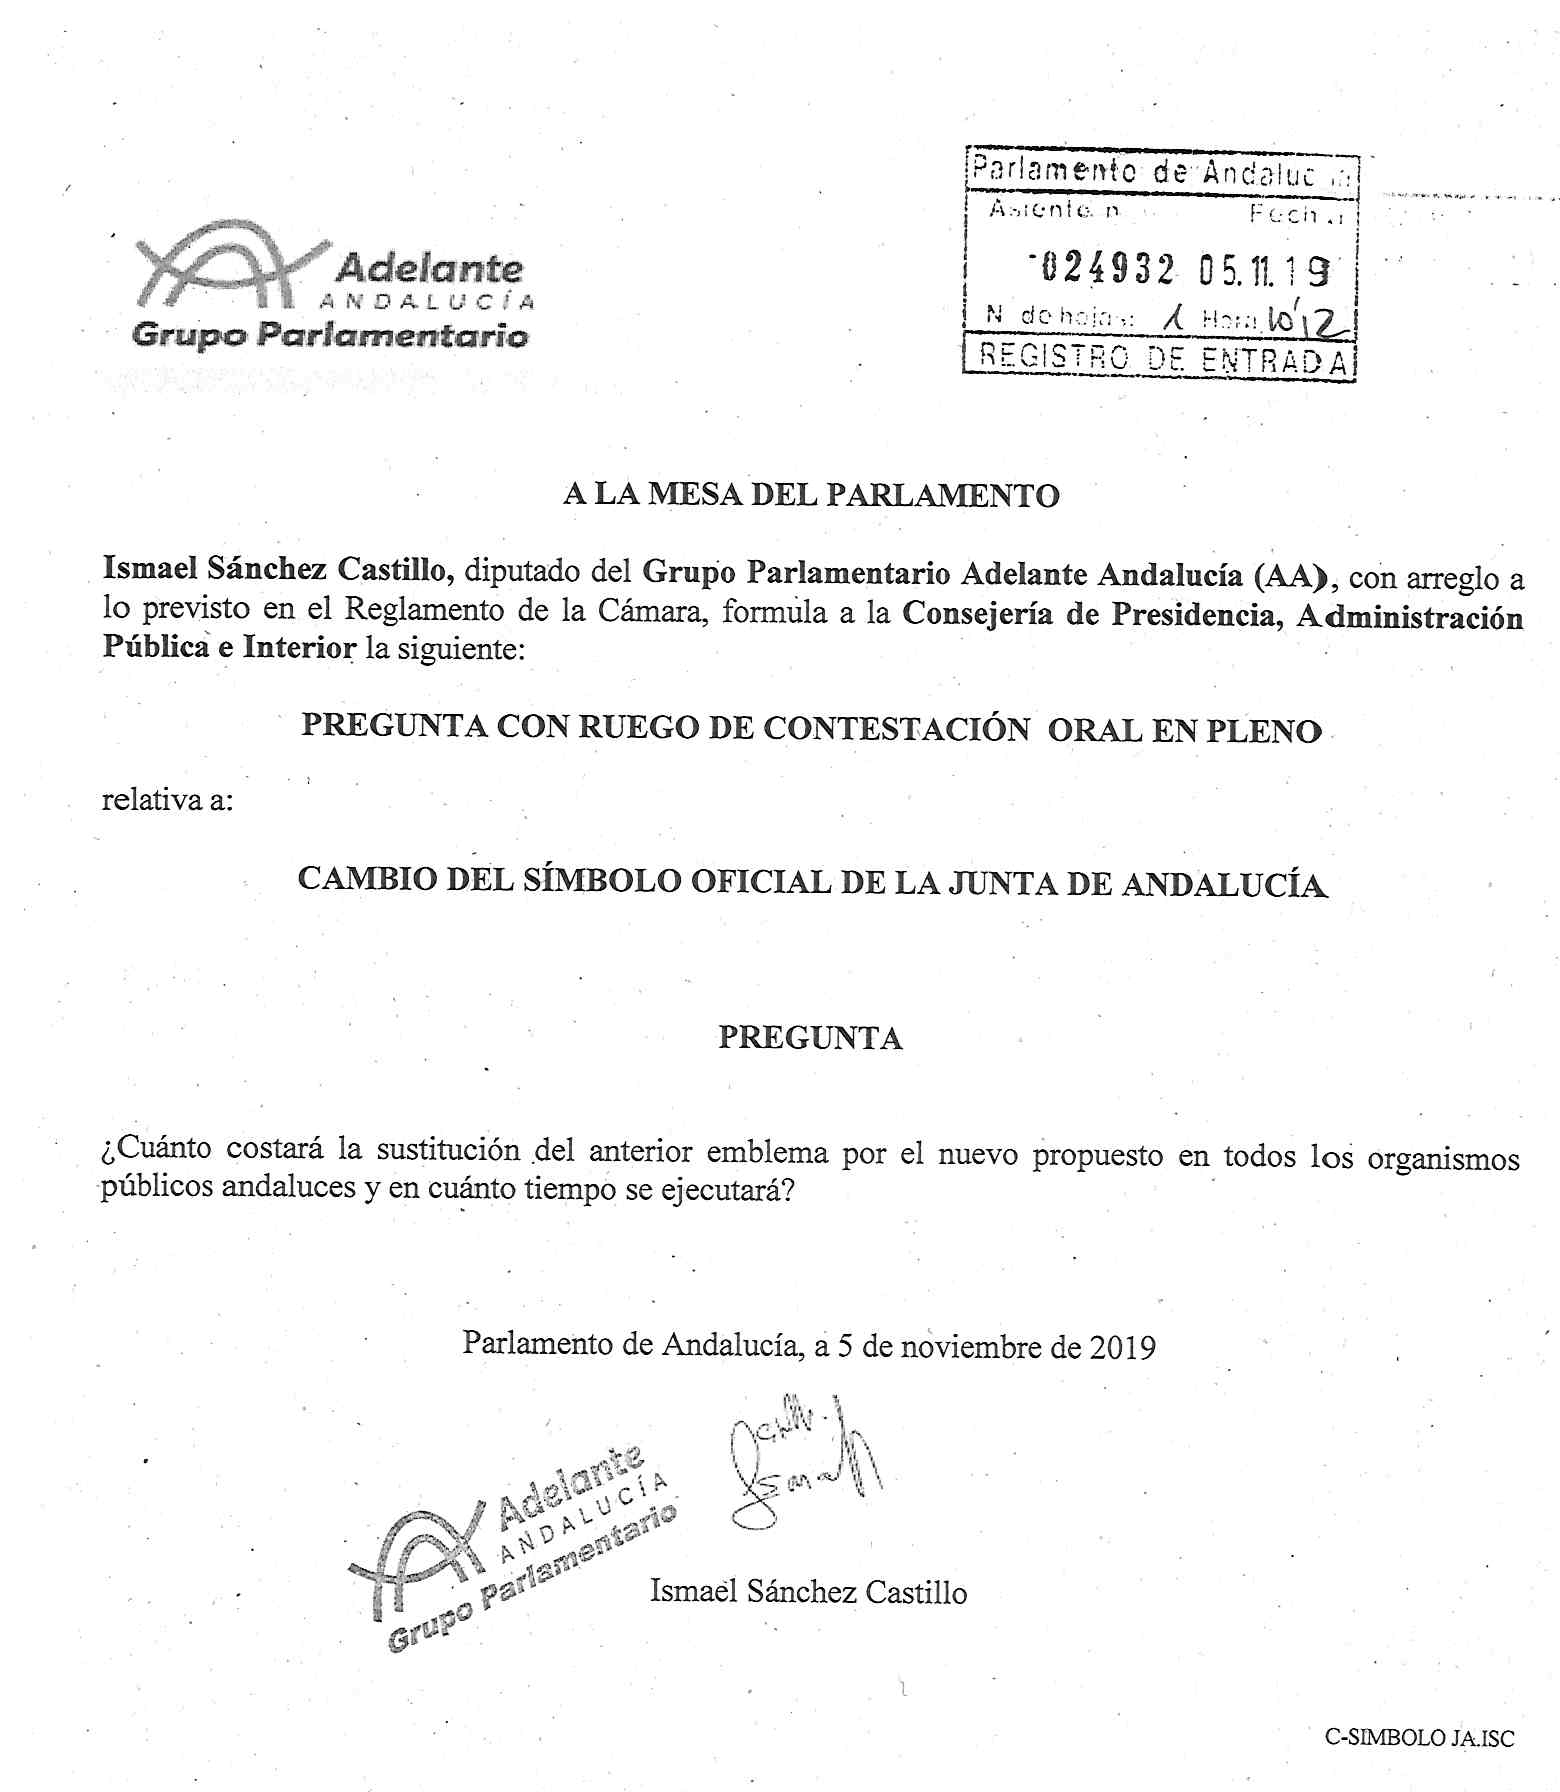 Pregunta a Pleno sobre el cambio del símbolo oficial de la Junta de Andalucía